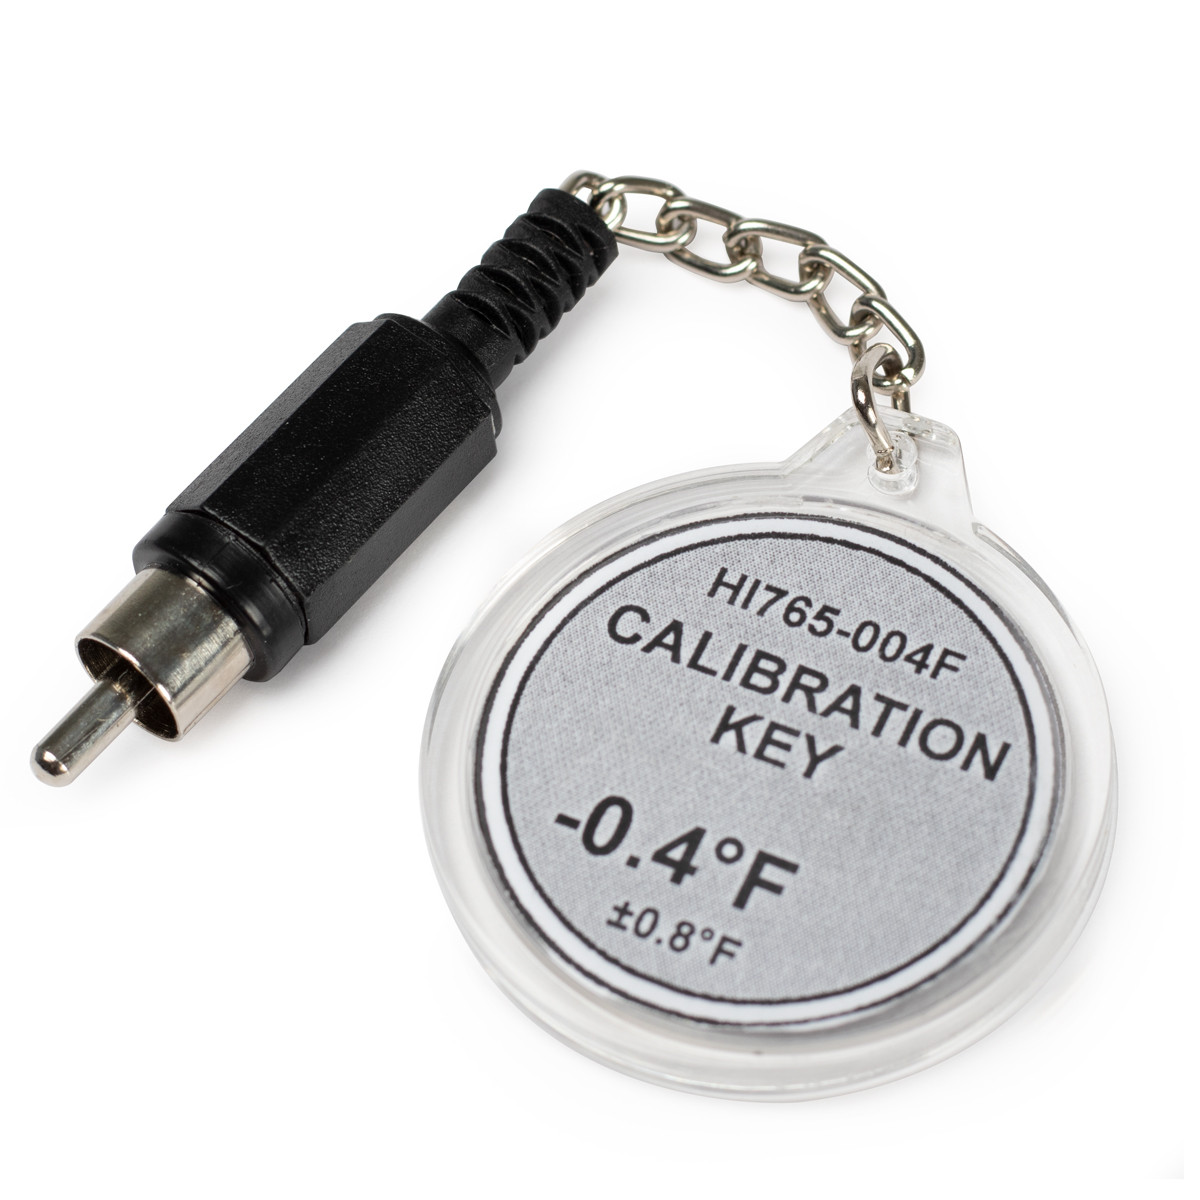 Calibration Check Key at -0.4°F (HI765 Probes)